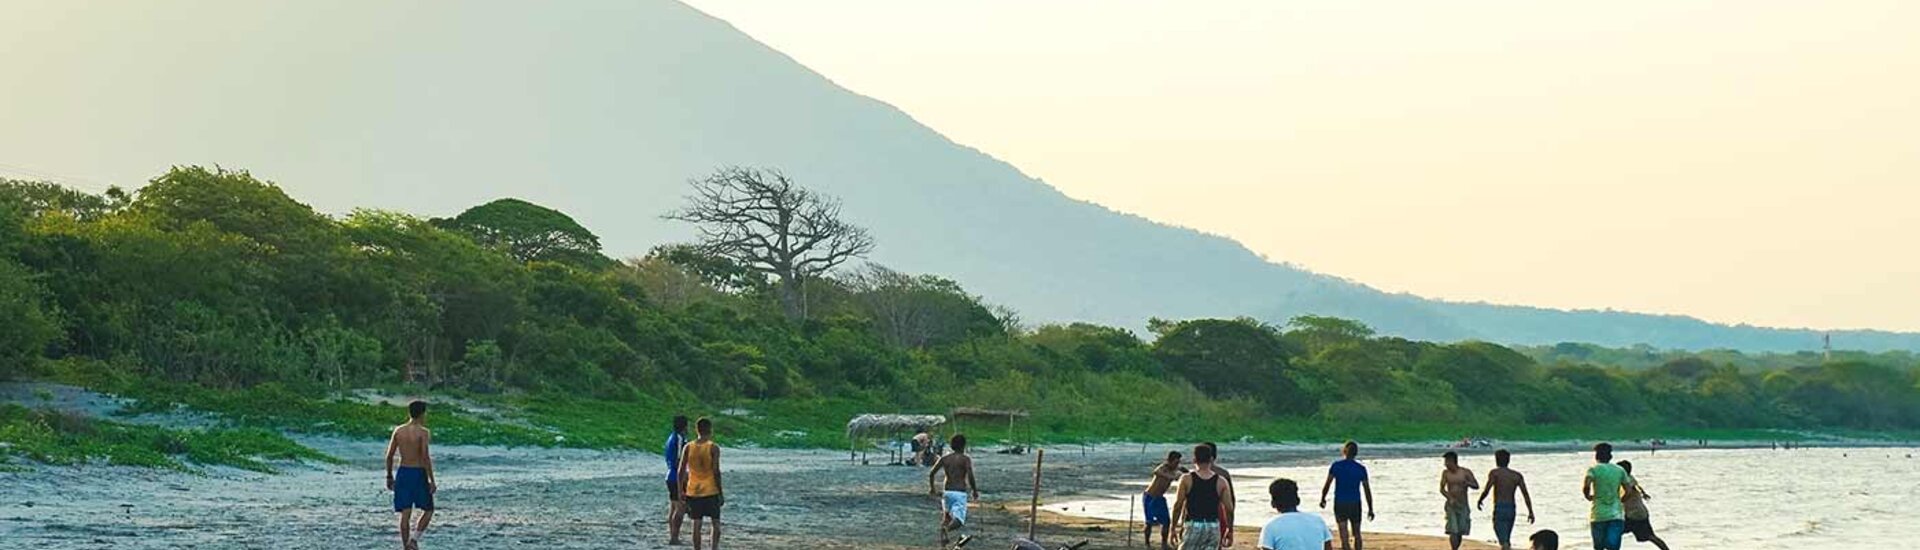 Menschen am Strand von Ometepe, Nicaragua